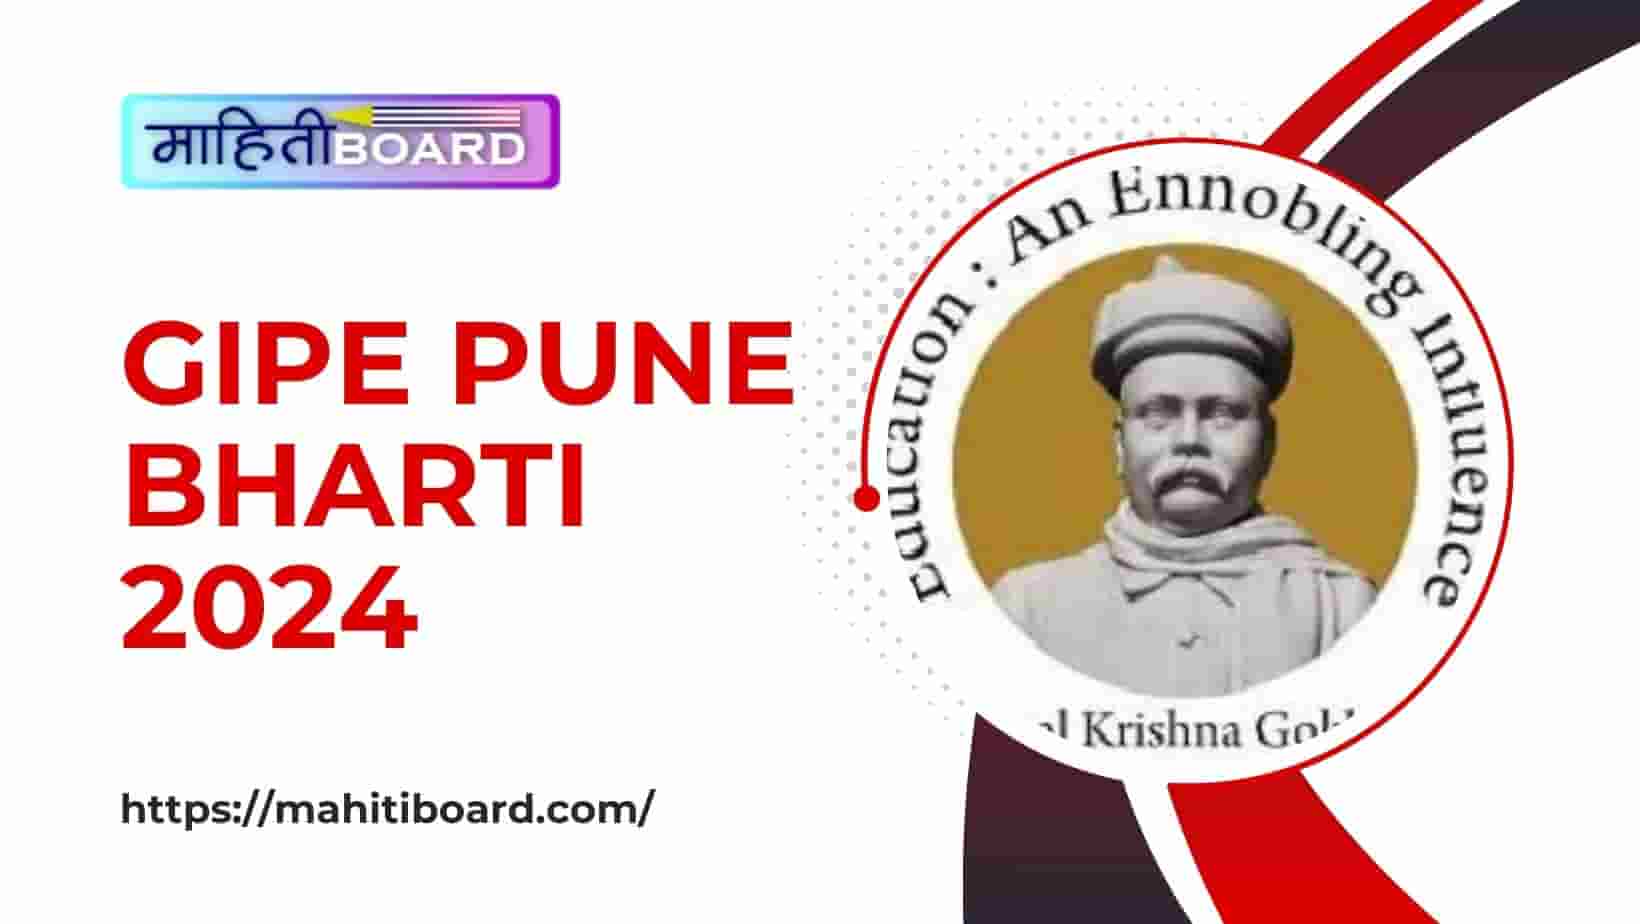 GIPE Pune Bharti 2024